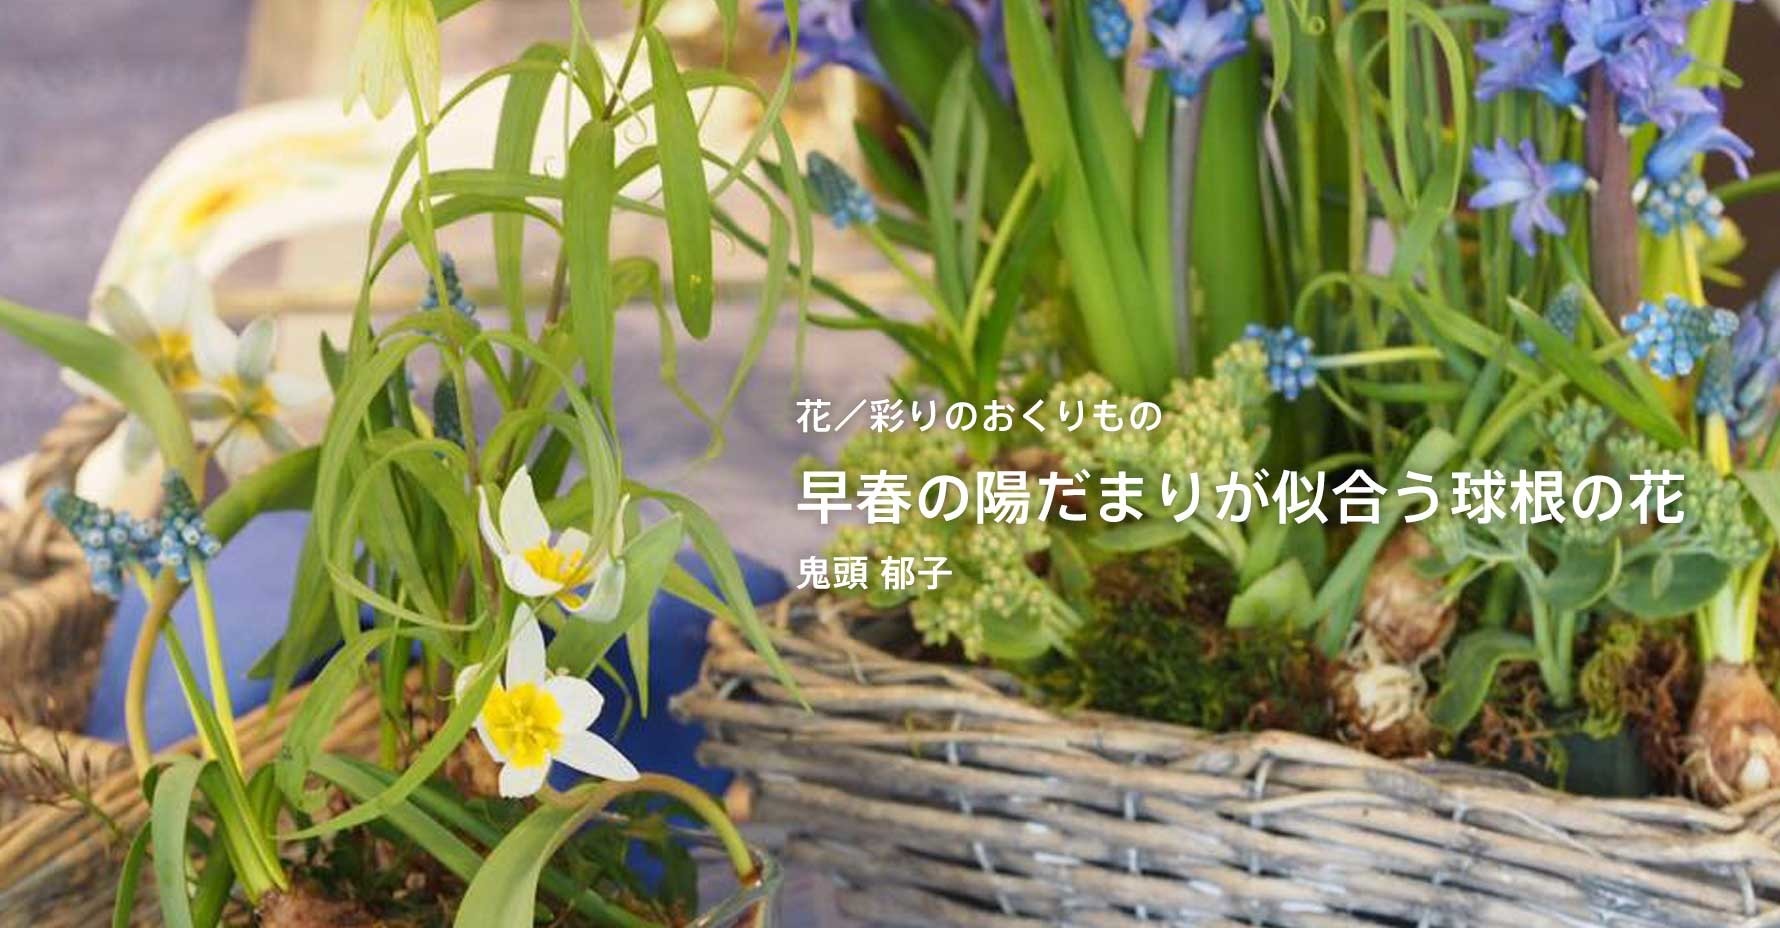 1月の鬼頭郁子さんのエッセイ「早春の陽だまりが似合う球根の花」を更新しました。